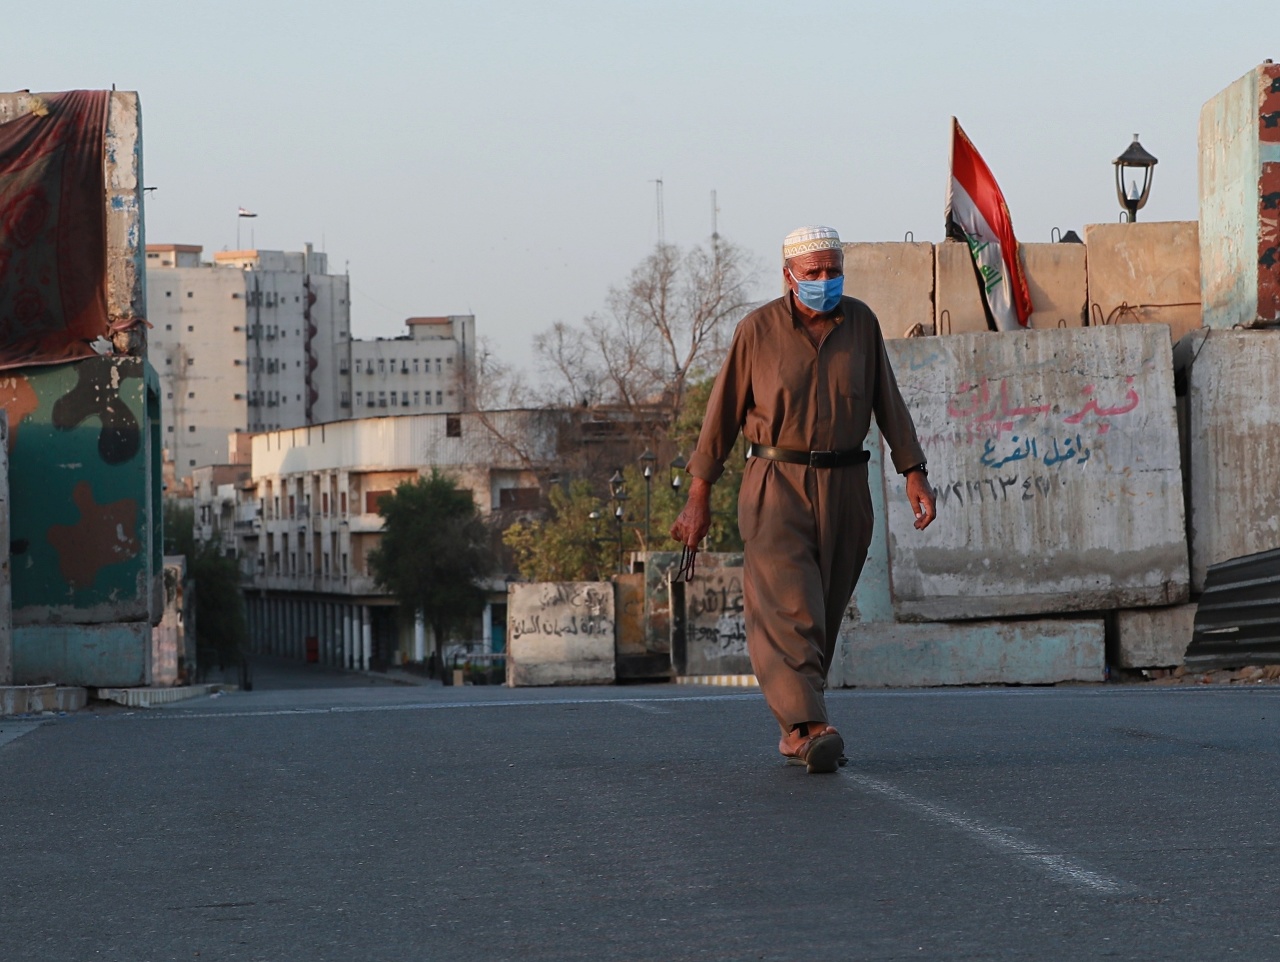 Iračan kráča po takmer prázdnej ulici v centrálnom Bagdade 